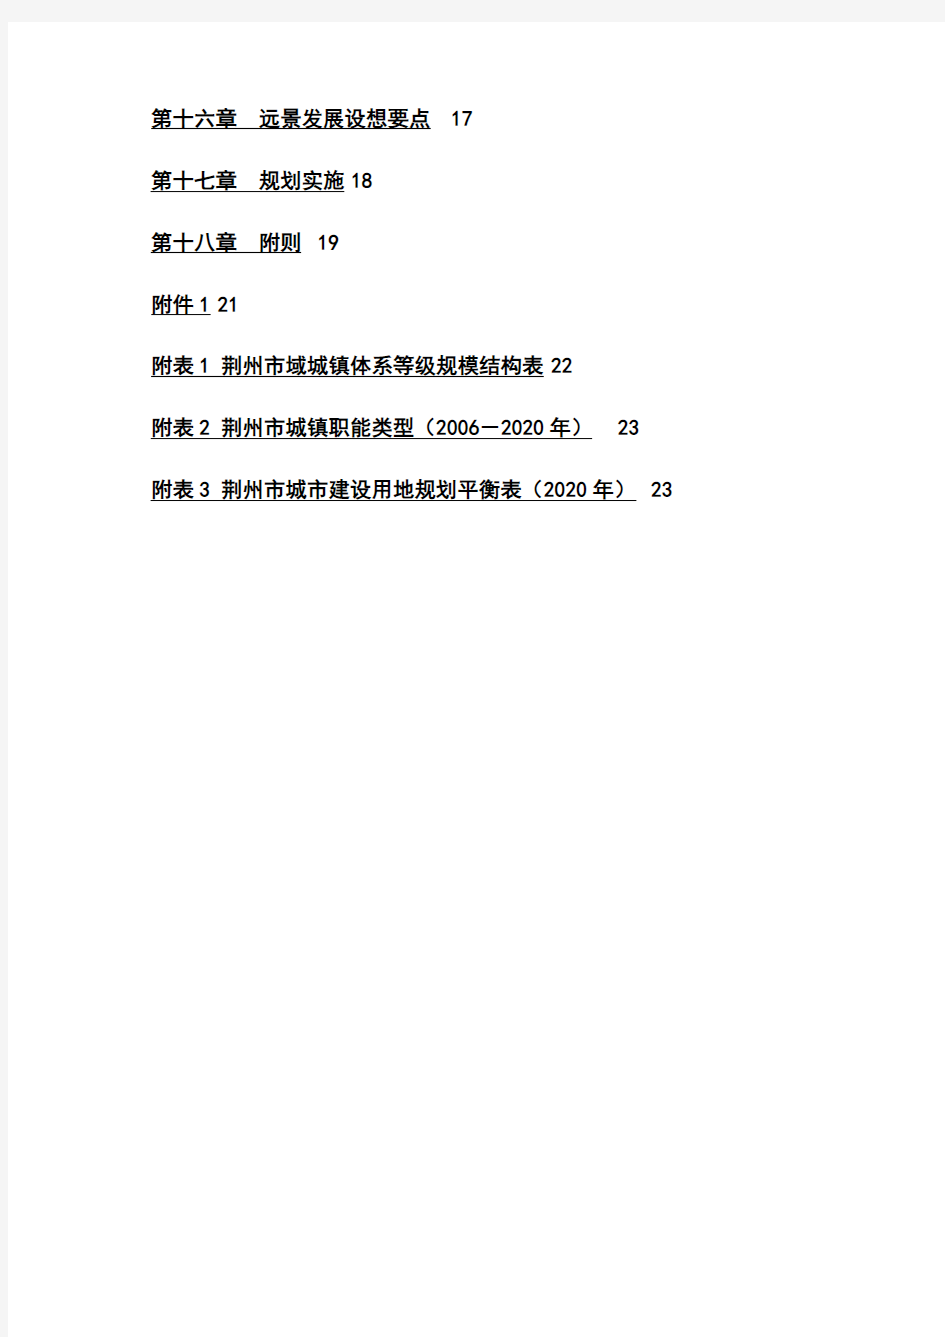 荆州市城市总体规划纲要(2006-2020)